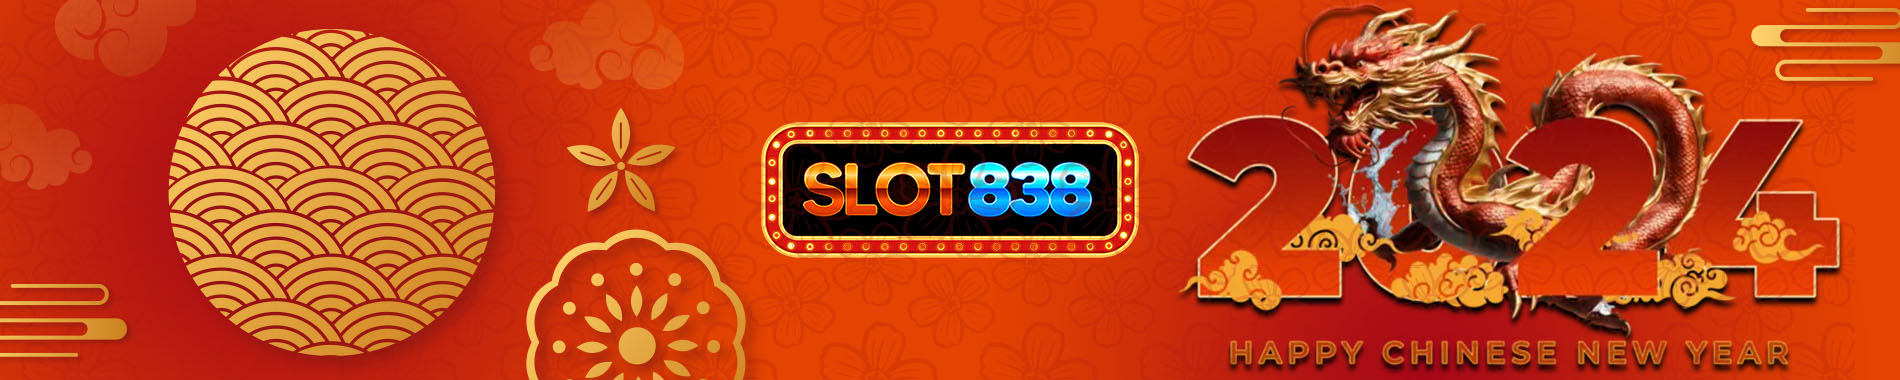 SLOT838 - Games Online Resmi Terbaik Di Indonesia